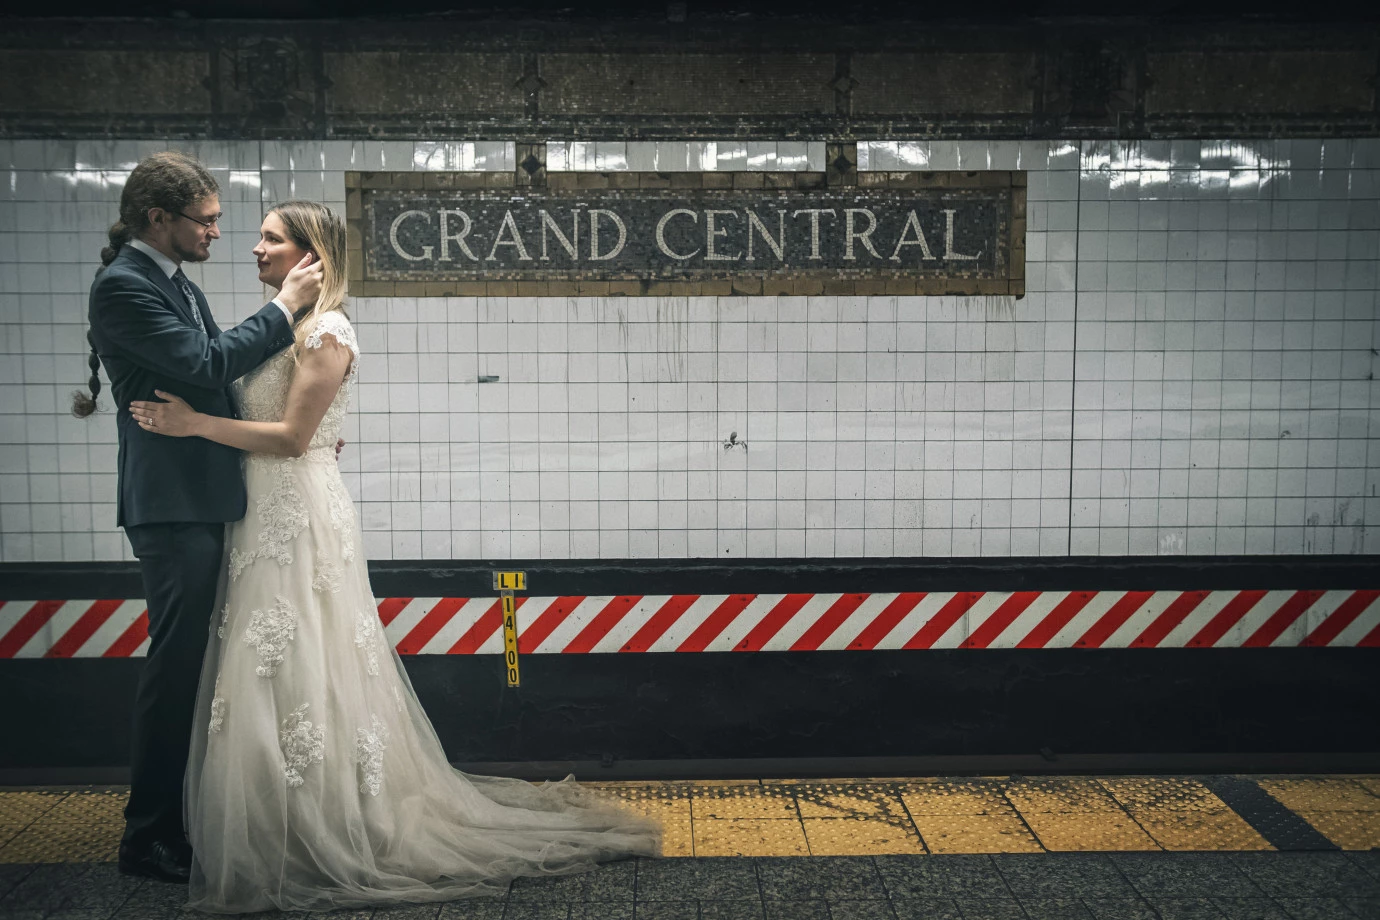 zdjęcia lodz fotograf kameralowe portfolio zdjecia slubne inspiracje wesele plener slubny sesja slubna